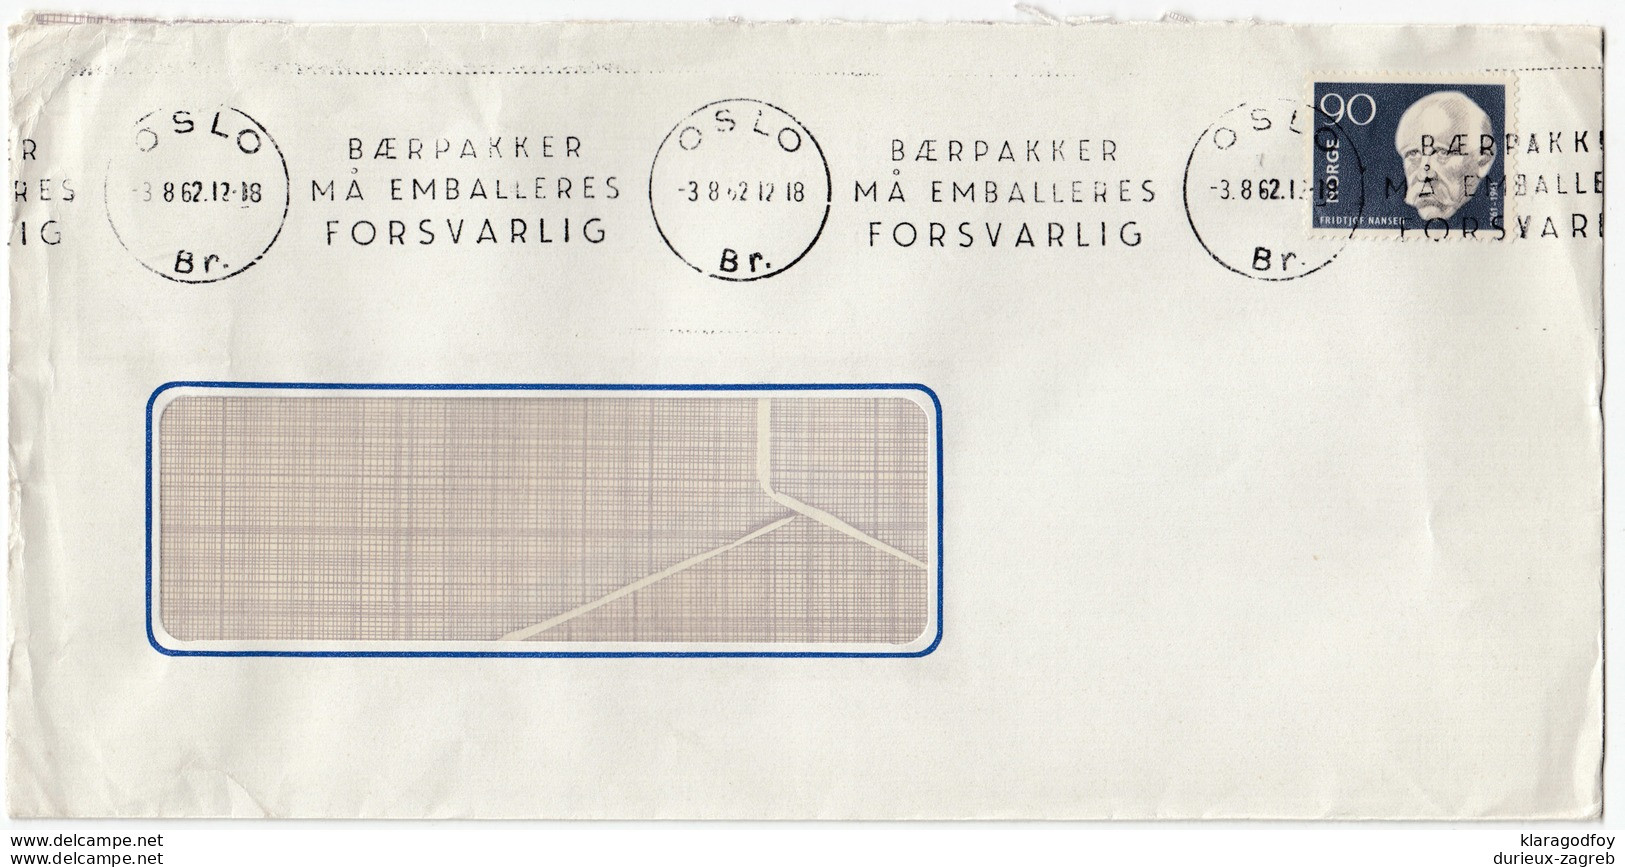 Baerpakker Ma Emalleres Forsvarlig Slogan Postmark On Letter Cover Travelled 1962  Bb161210 - Brieven En Documenten